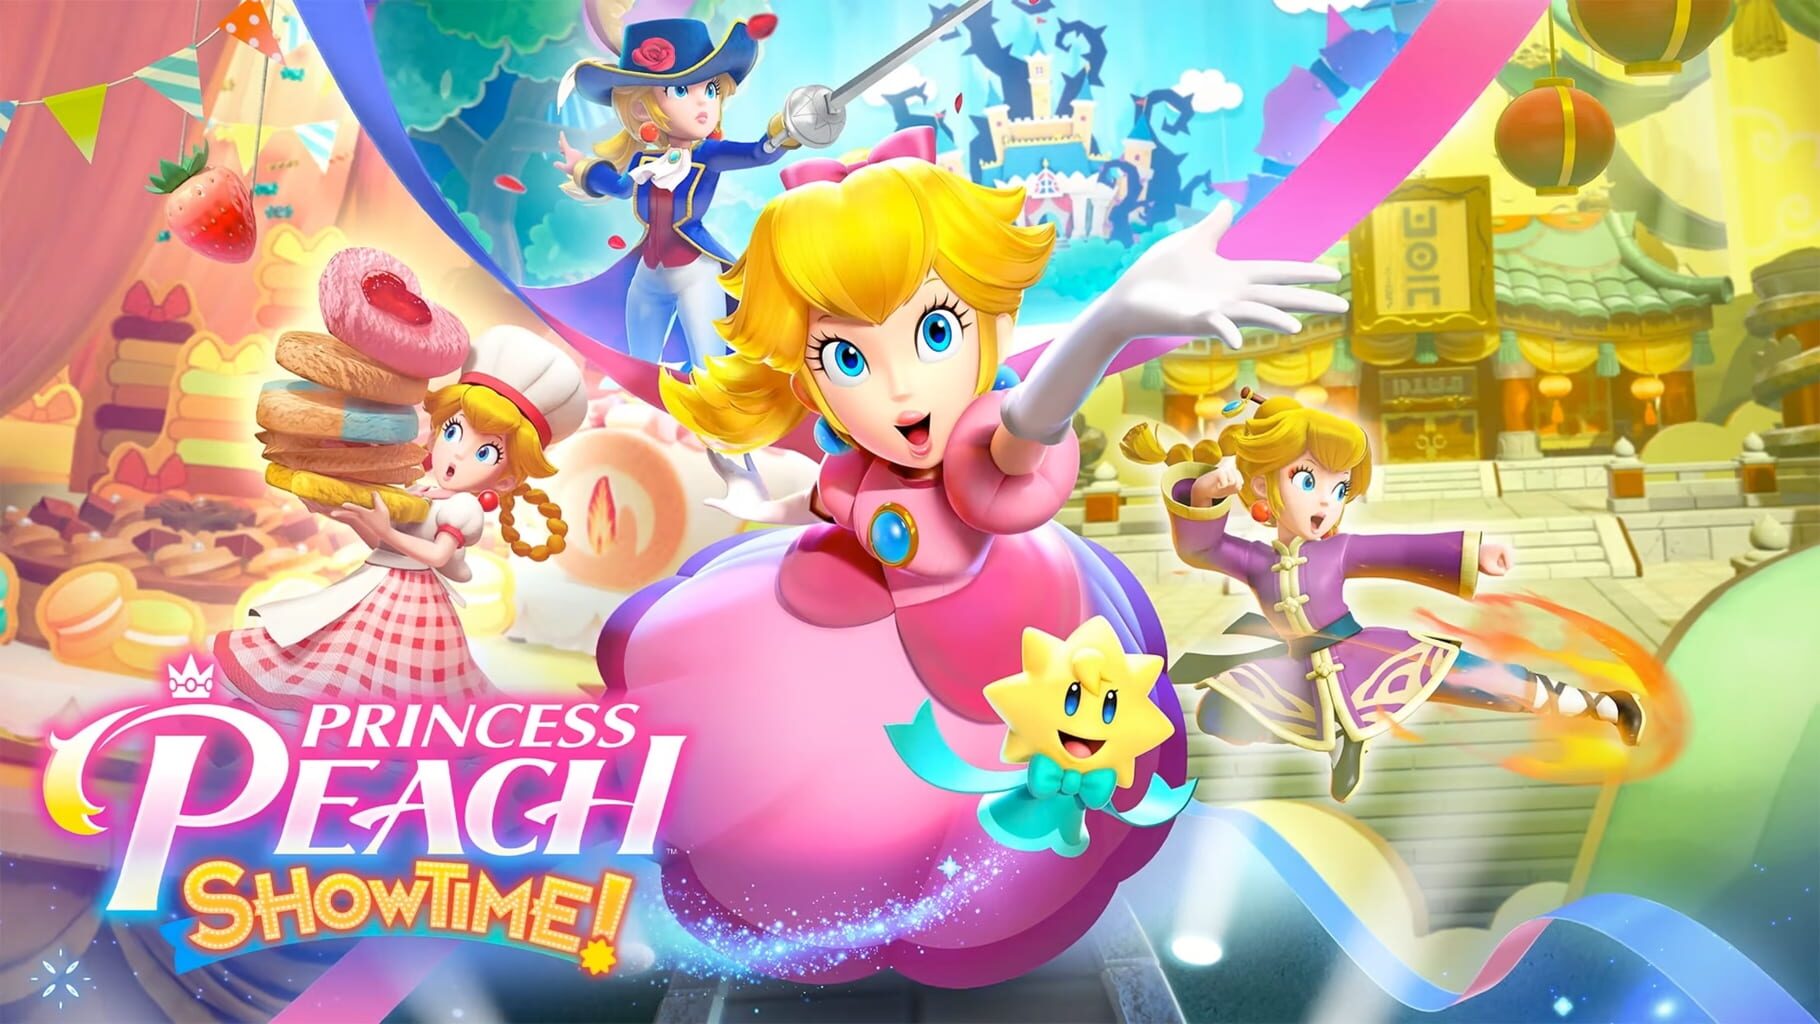 Artwork for Princess Peach: Showtime!